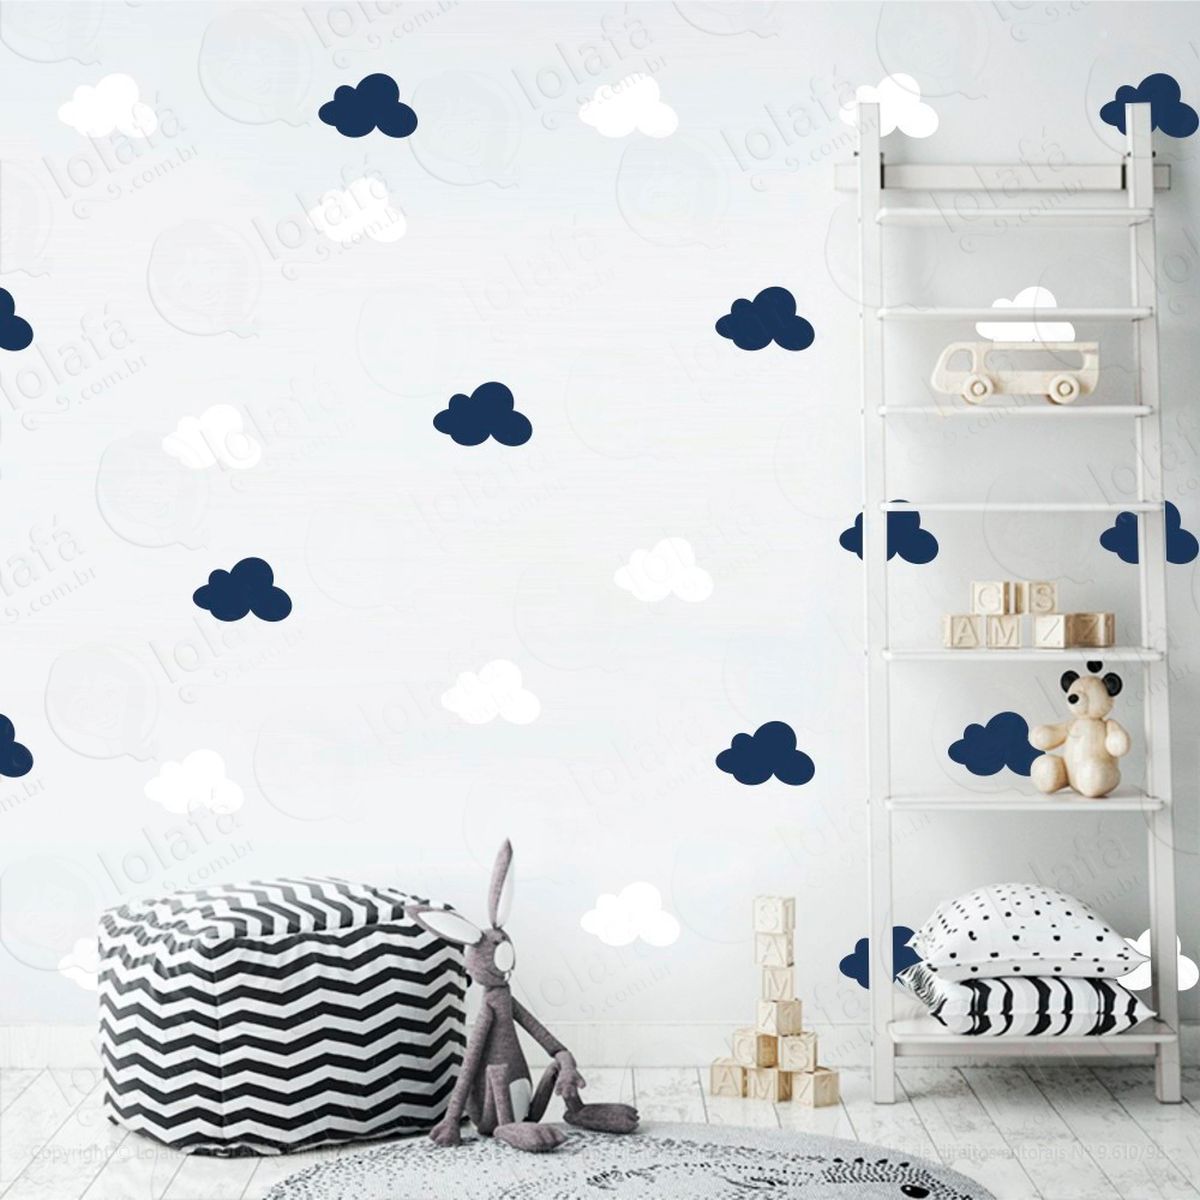 adesivos nuvens 36 peças adesivos para quarto de bebê infantil - mod:497